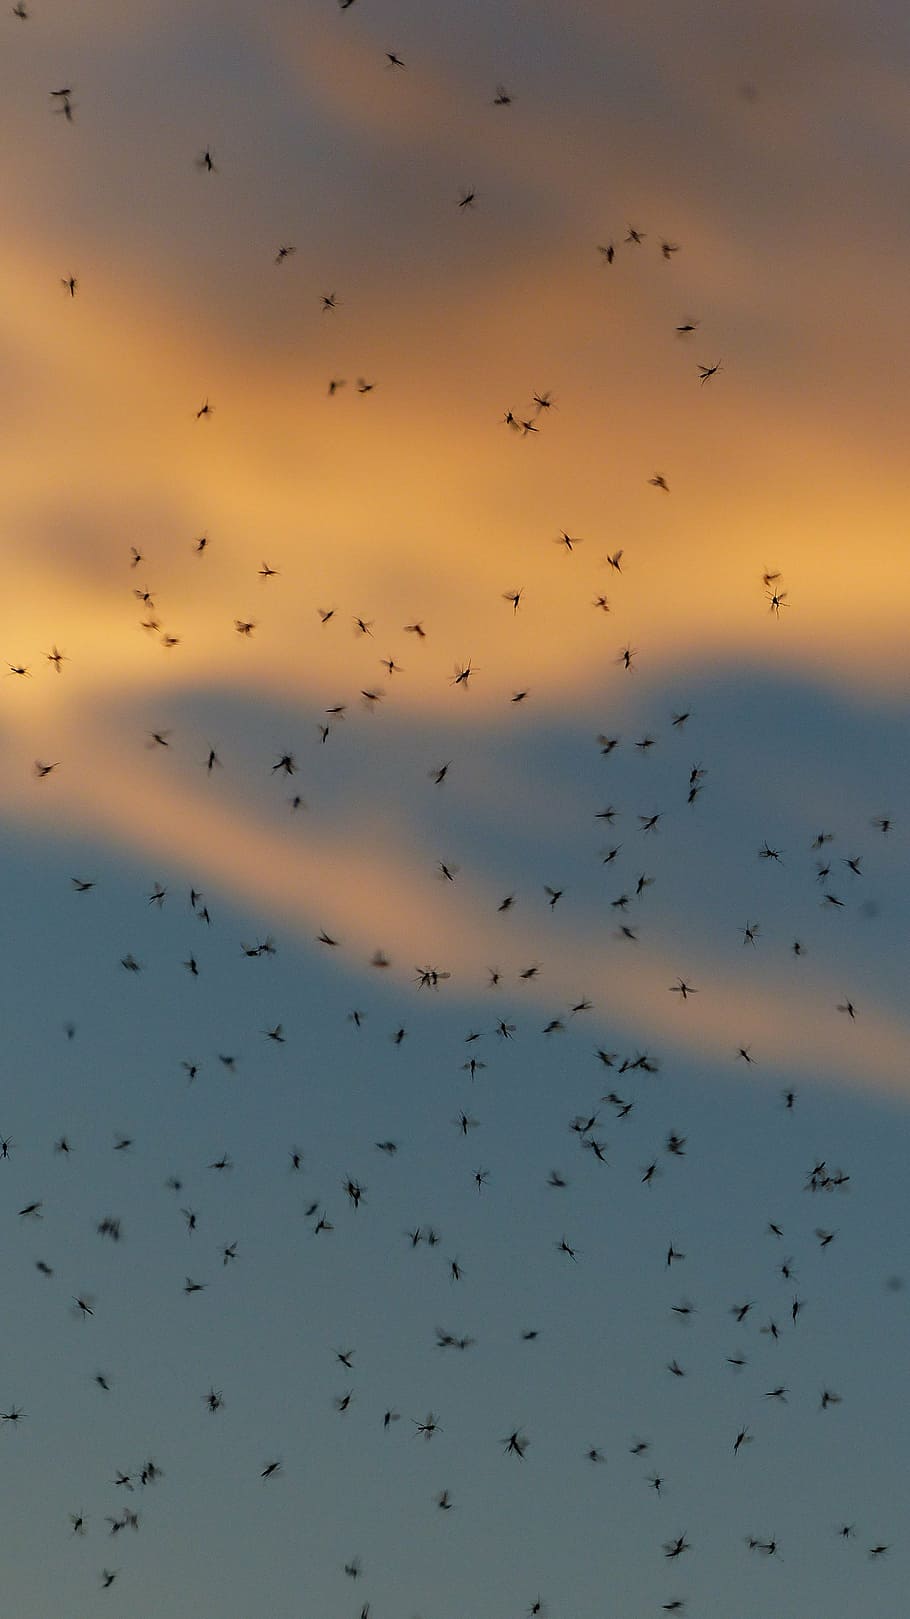 蚊の群れ, 群れ, 蚊, fliegenschwarm, バックライト, 昆虫, 非噛むミッジ, ユスリカ, ダンス蚊, 群れの蚊